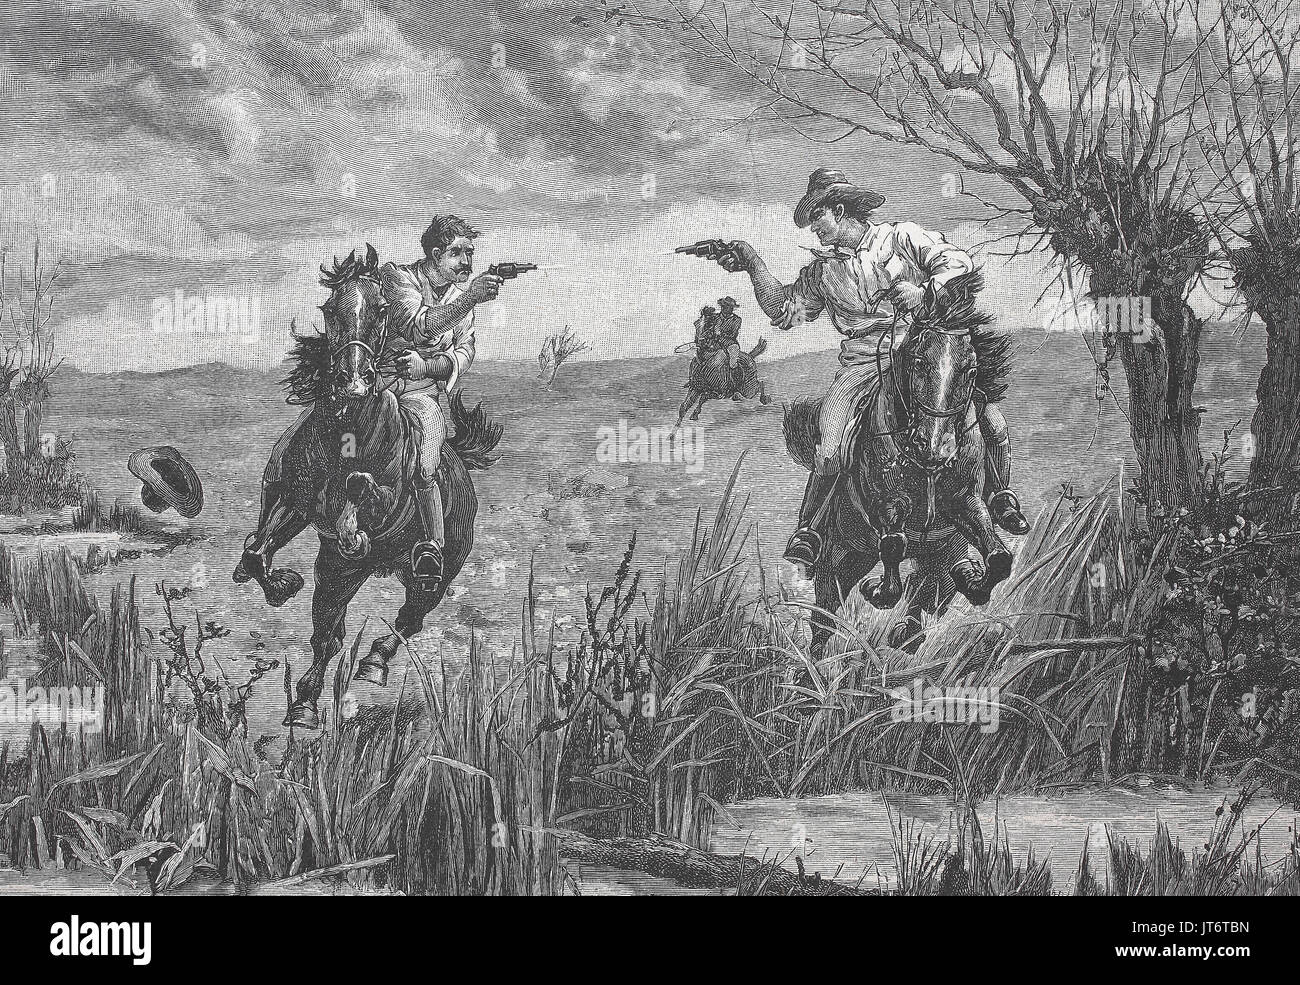 Los cowboys Americanos duelo con pistolas desde el caballo, mejor reproducción digital de una imagen publicada entre 1880 - 1885 Foto de stock